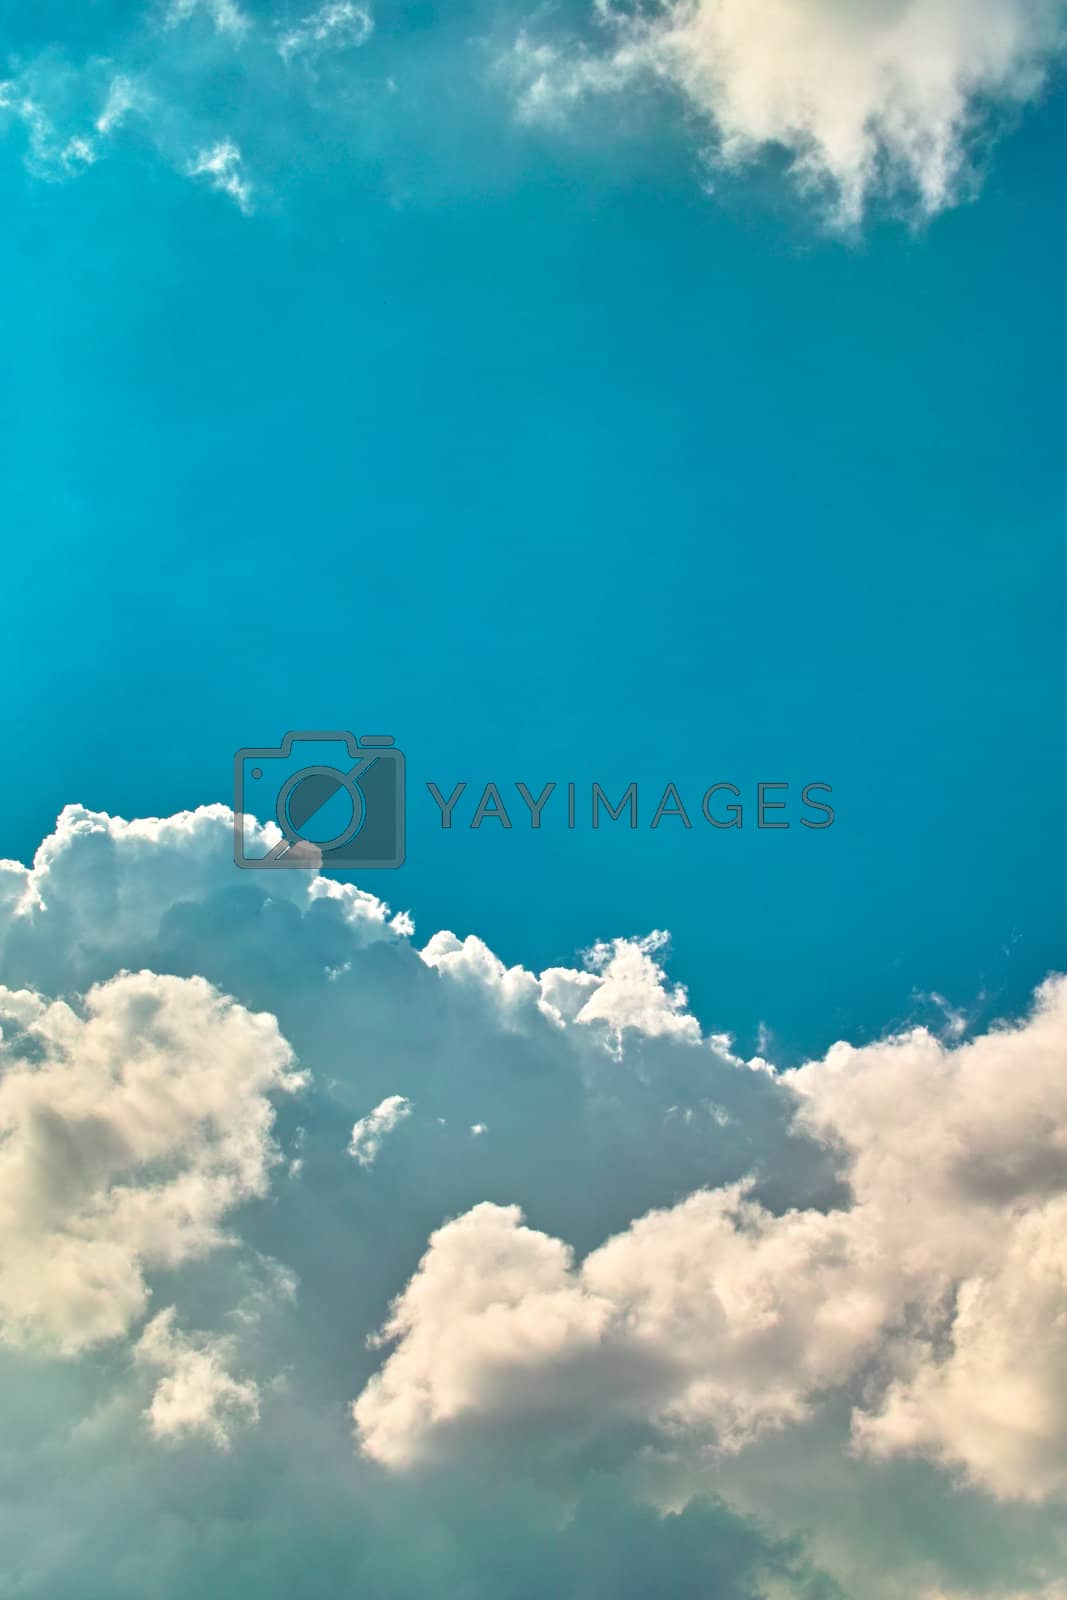 Royalty free image of Cloud by jones137hk